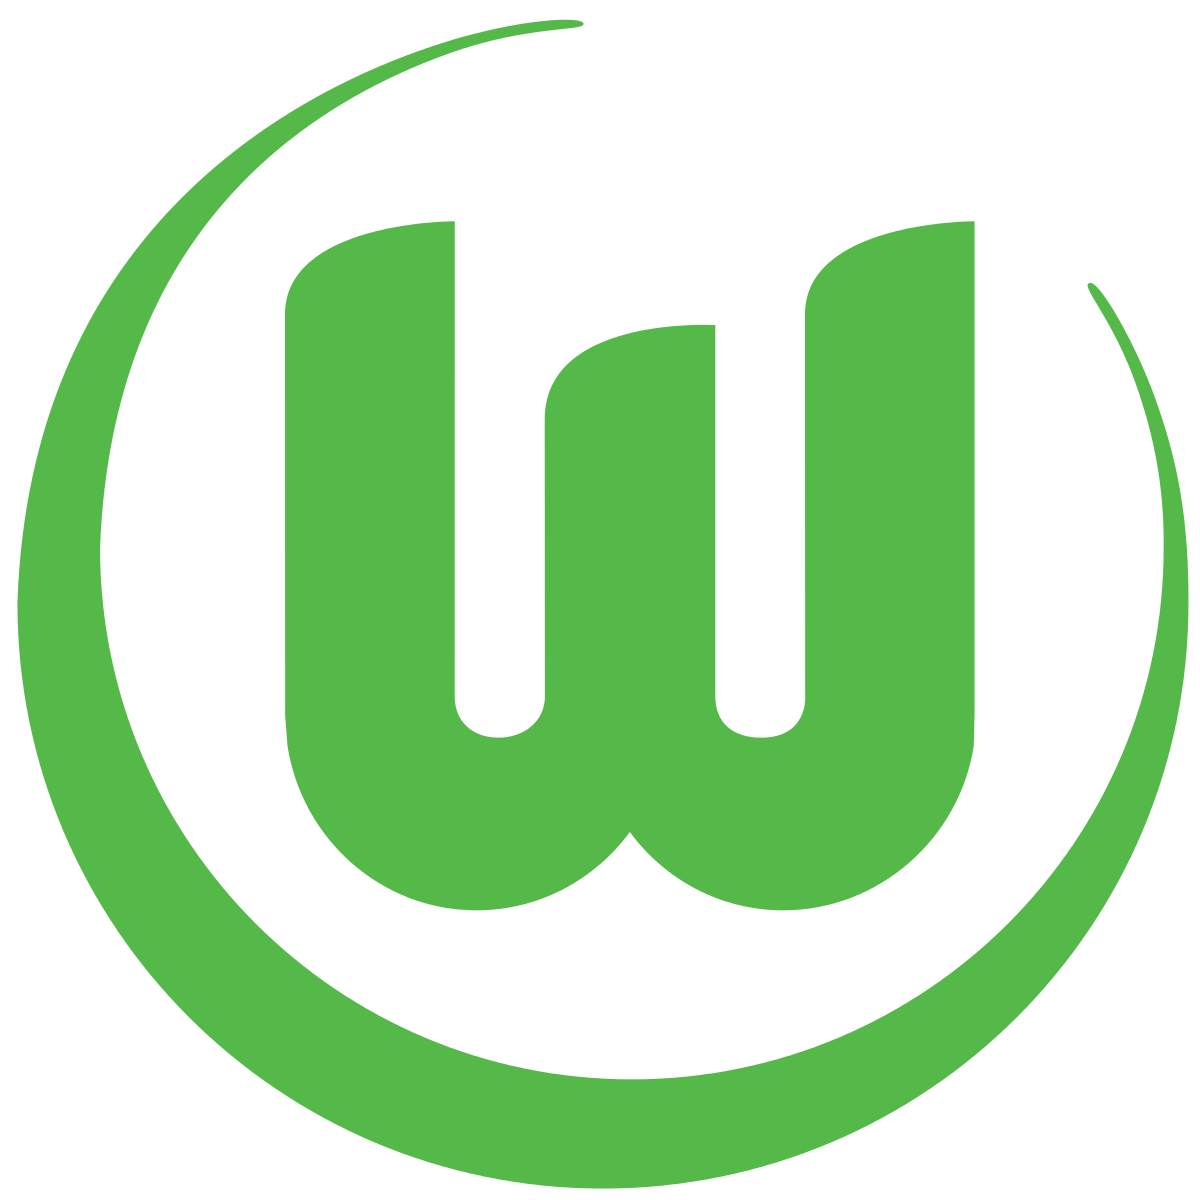 Vfl Wolfsburg Wikipedia